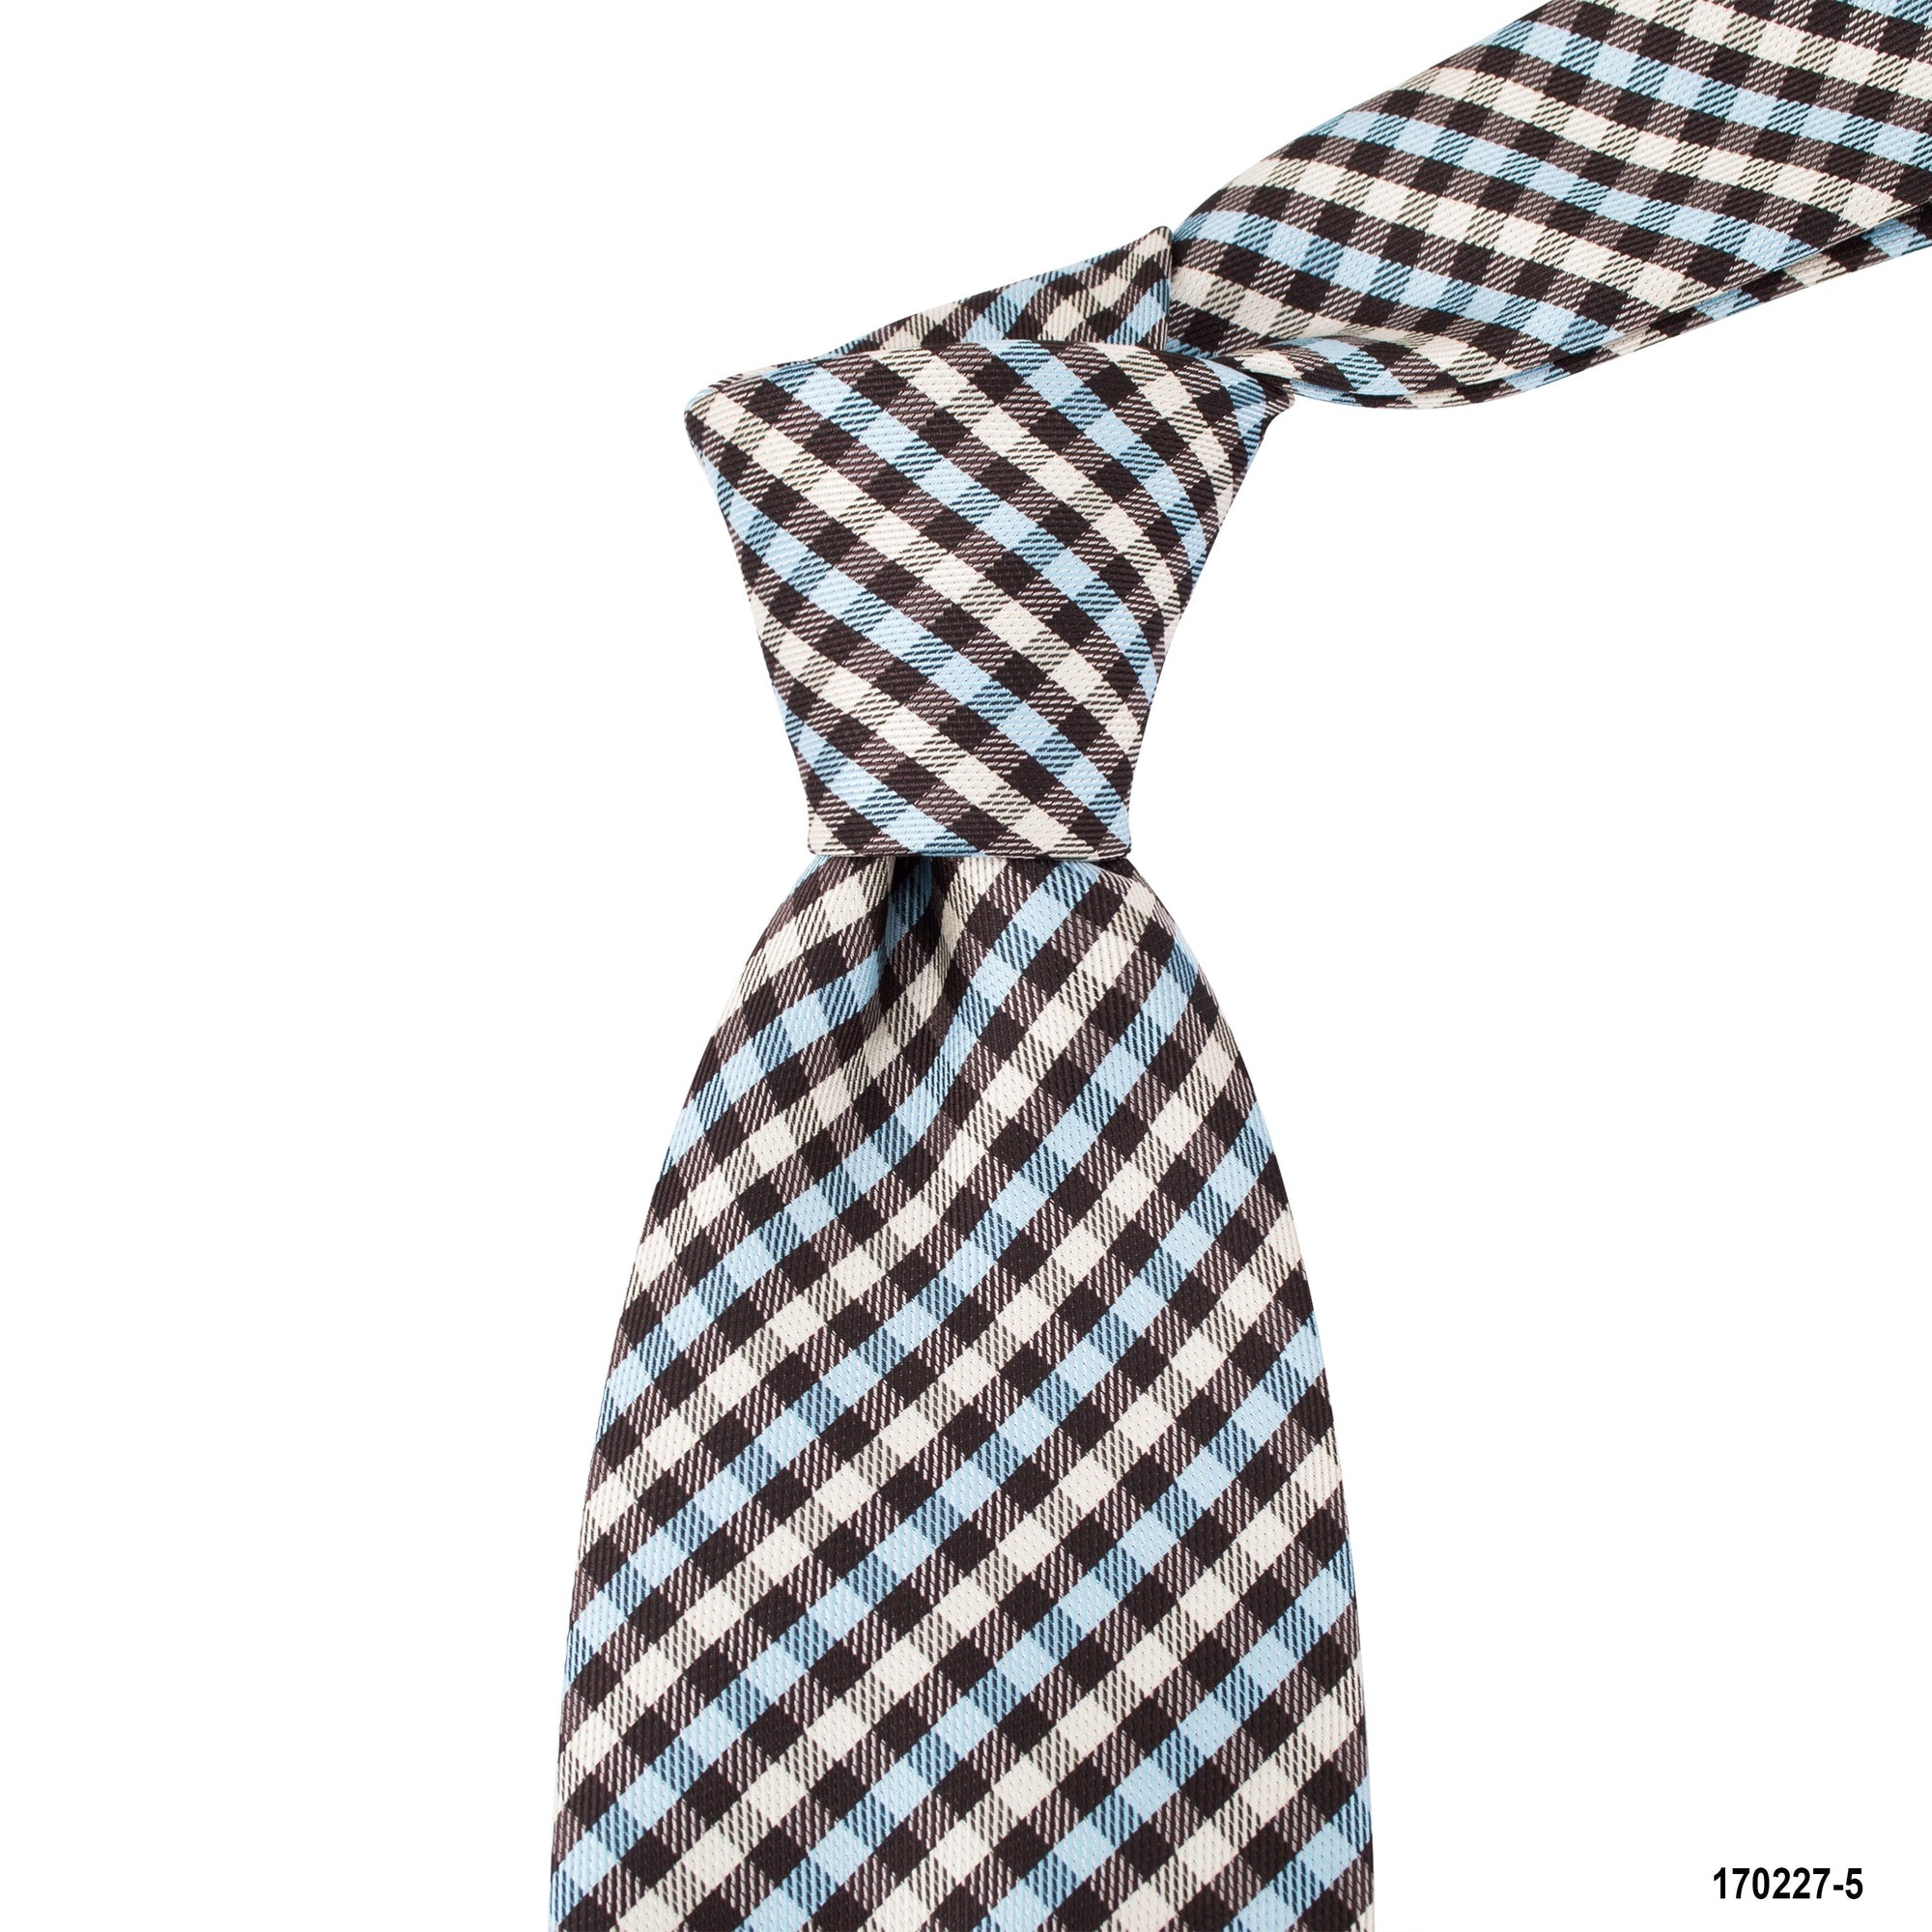 MarZthomson 8cm Gingham Checks Tie in Black, White and Blue A-Cufflinks.com.sg | Neckties.com.sg